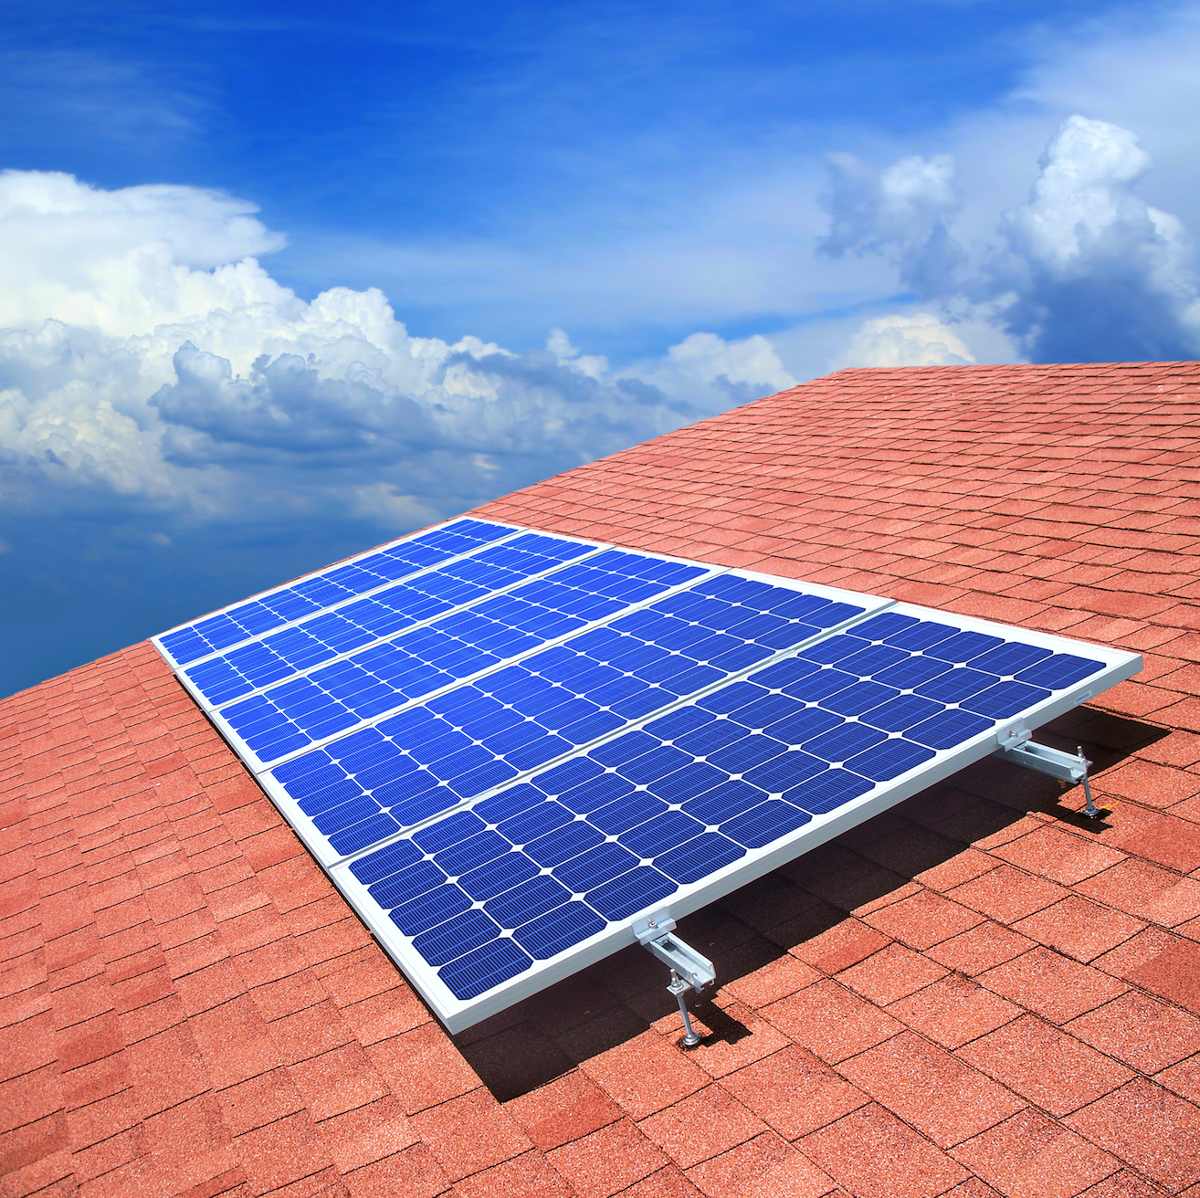 panel-solar-250-w-alta-calidad-garant-a-de-15-a-os-4-990-00-en